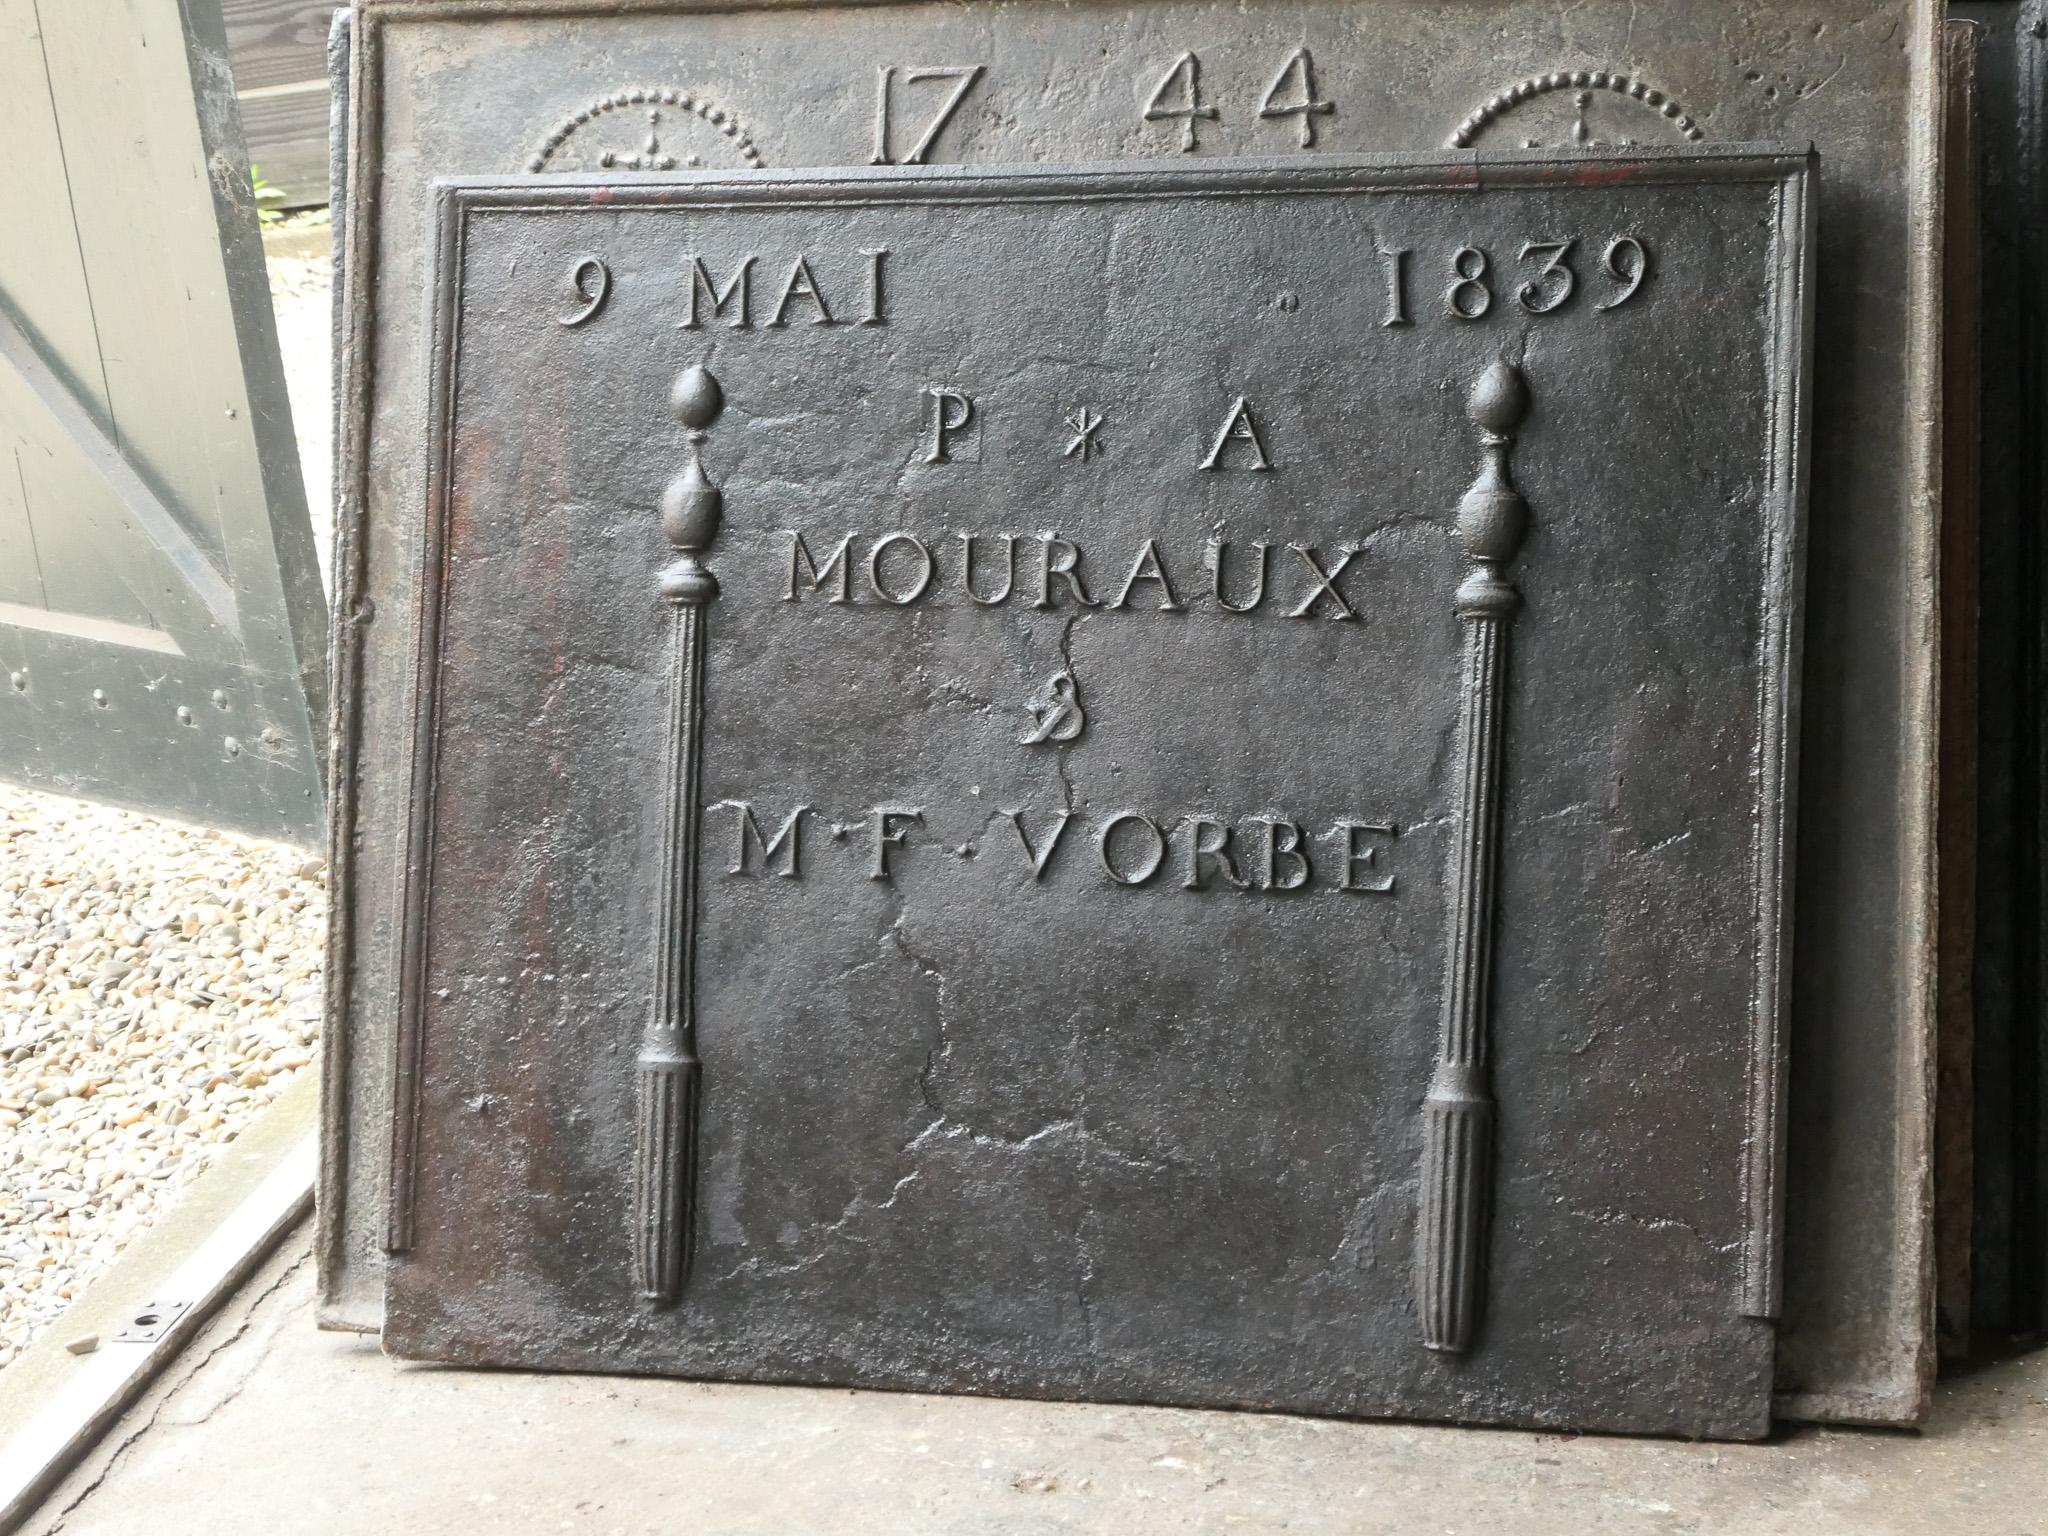 Französische neoklassizistische Kaminplatte aus dem 19. Jahrhundert, gegossen zu Ehren der Hochzeit von P.A. Mouraux und M.F. Vorbe im Jahr 1839. Die beiden Säulen, die sogenannten Säulen der Freiheit, symbolisieren die Freiheit, einen der drei